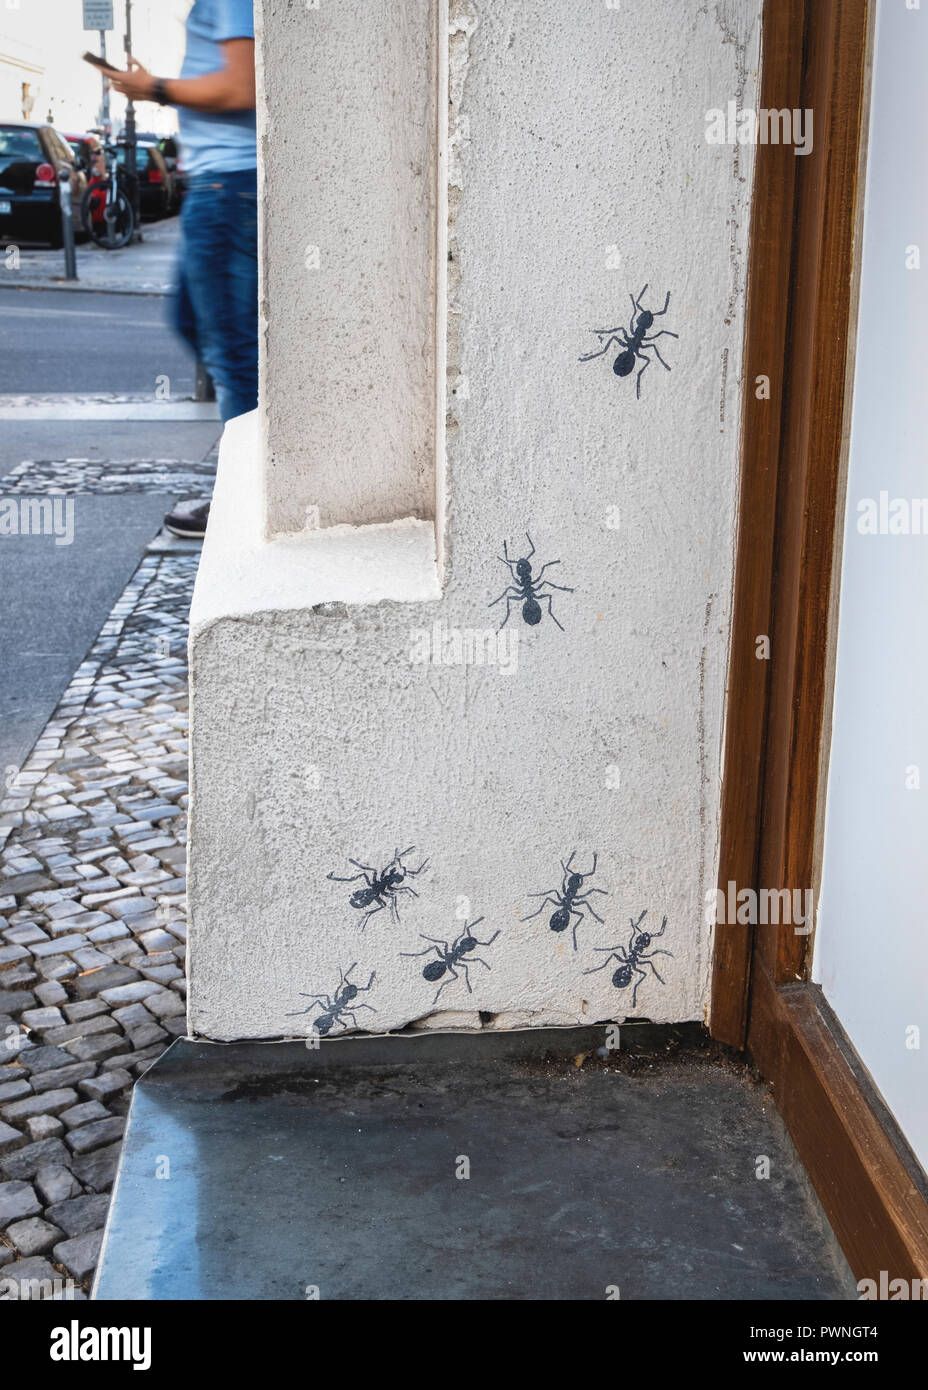 Arte di strada a Berlino, Urban wildlife, dipinto di formiche su parete di edificio Foto Stock